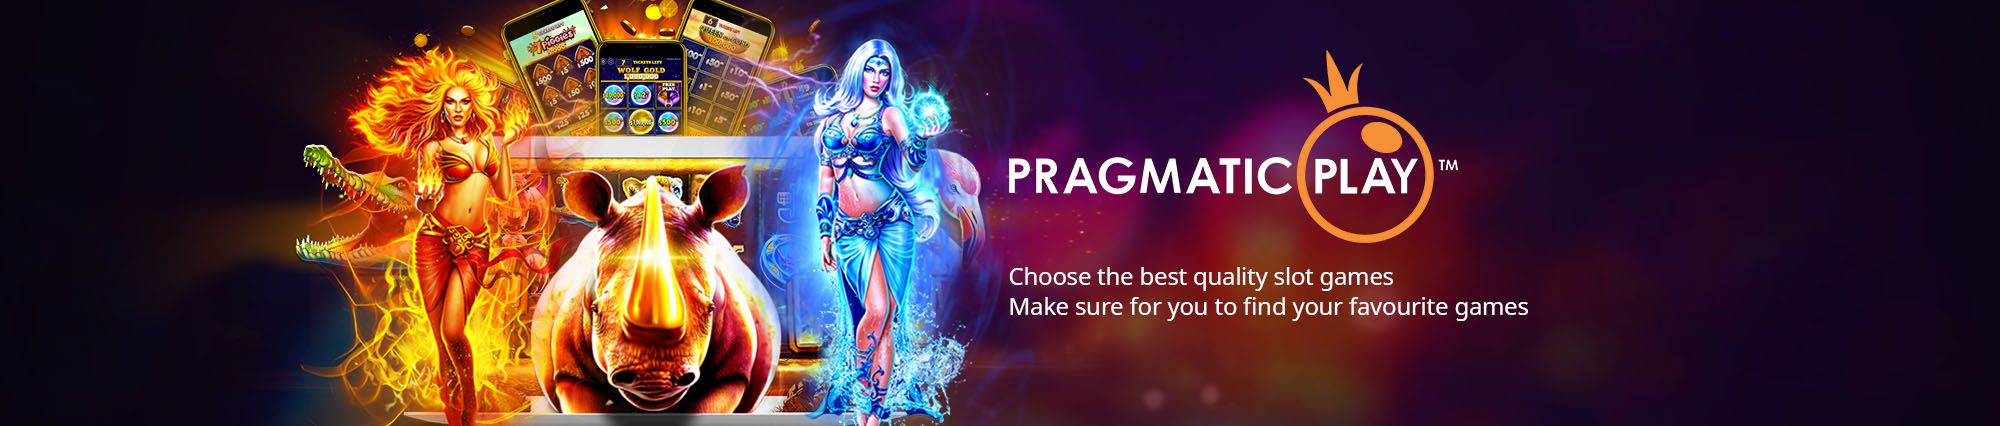 Pragmatic Play Provider Slot Online Terpopuler